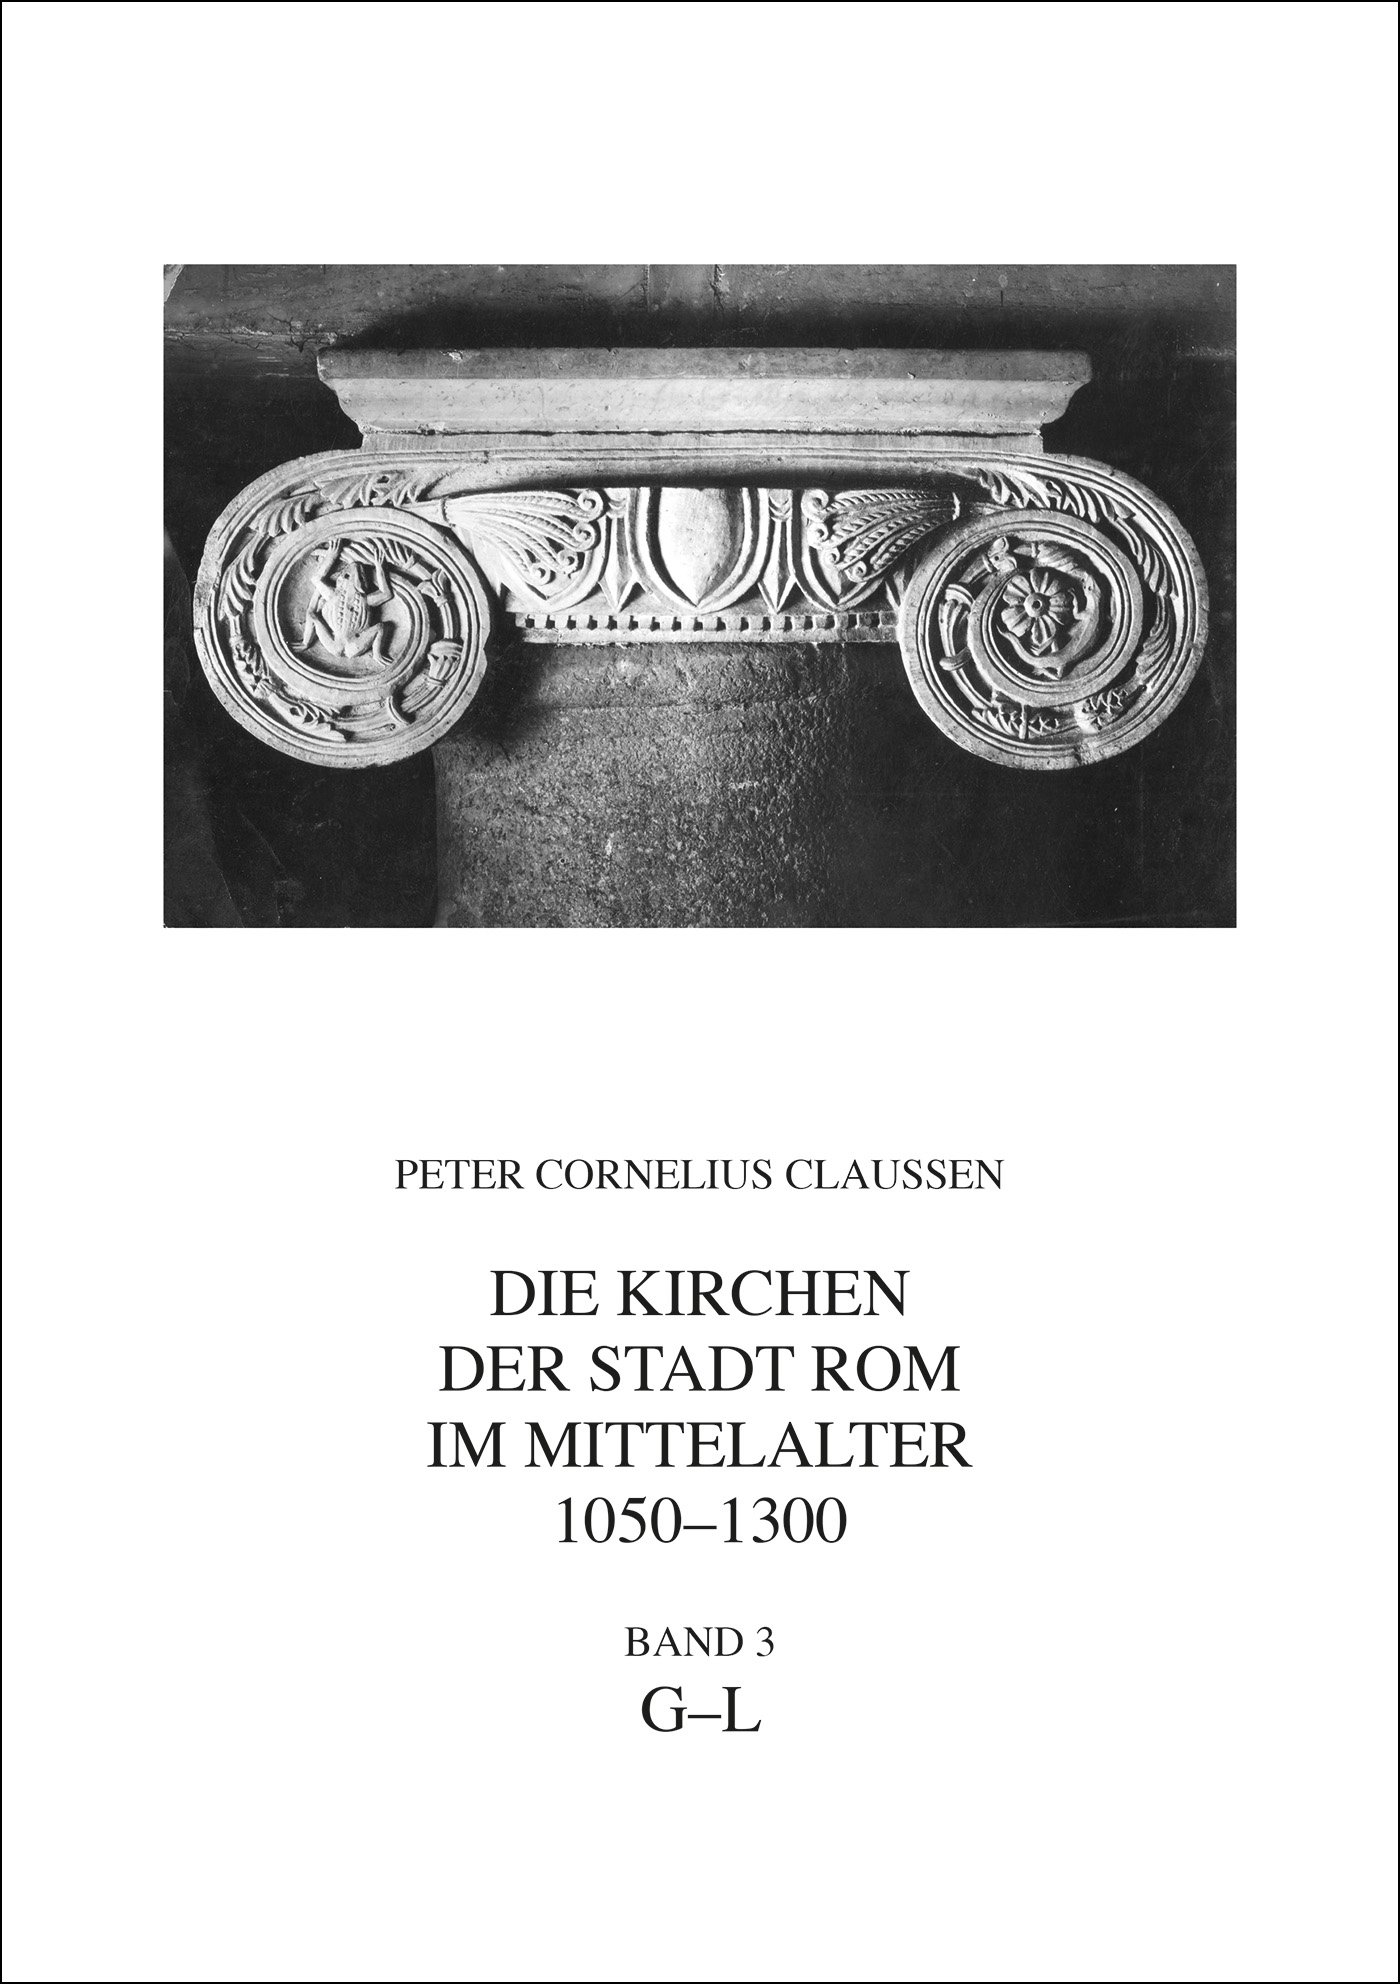 Die Kirchen der Stadt Rom im Mittelalter 1050-1300, G-L. Bd. 3